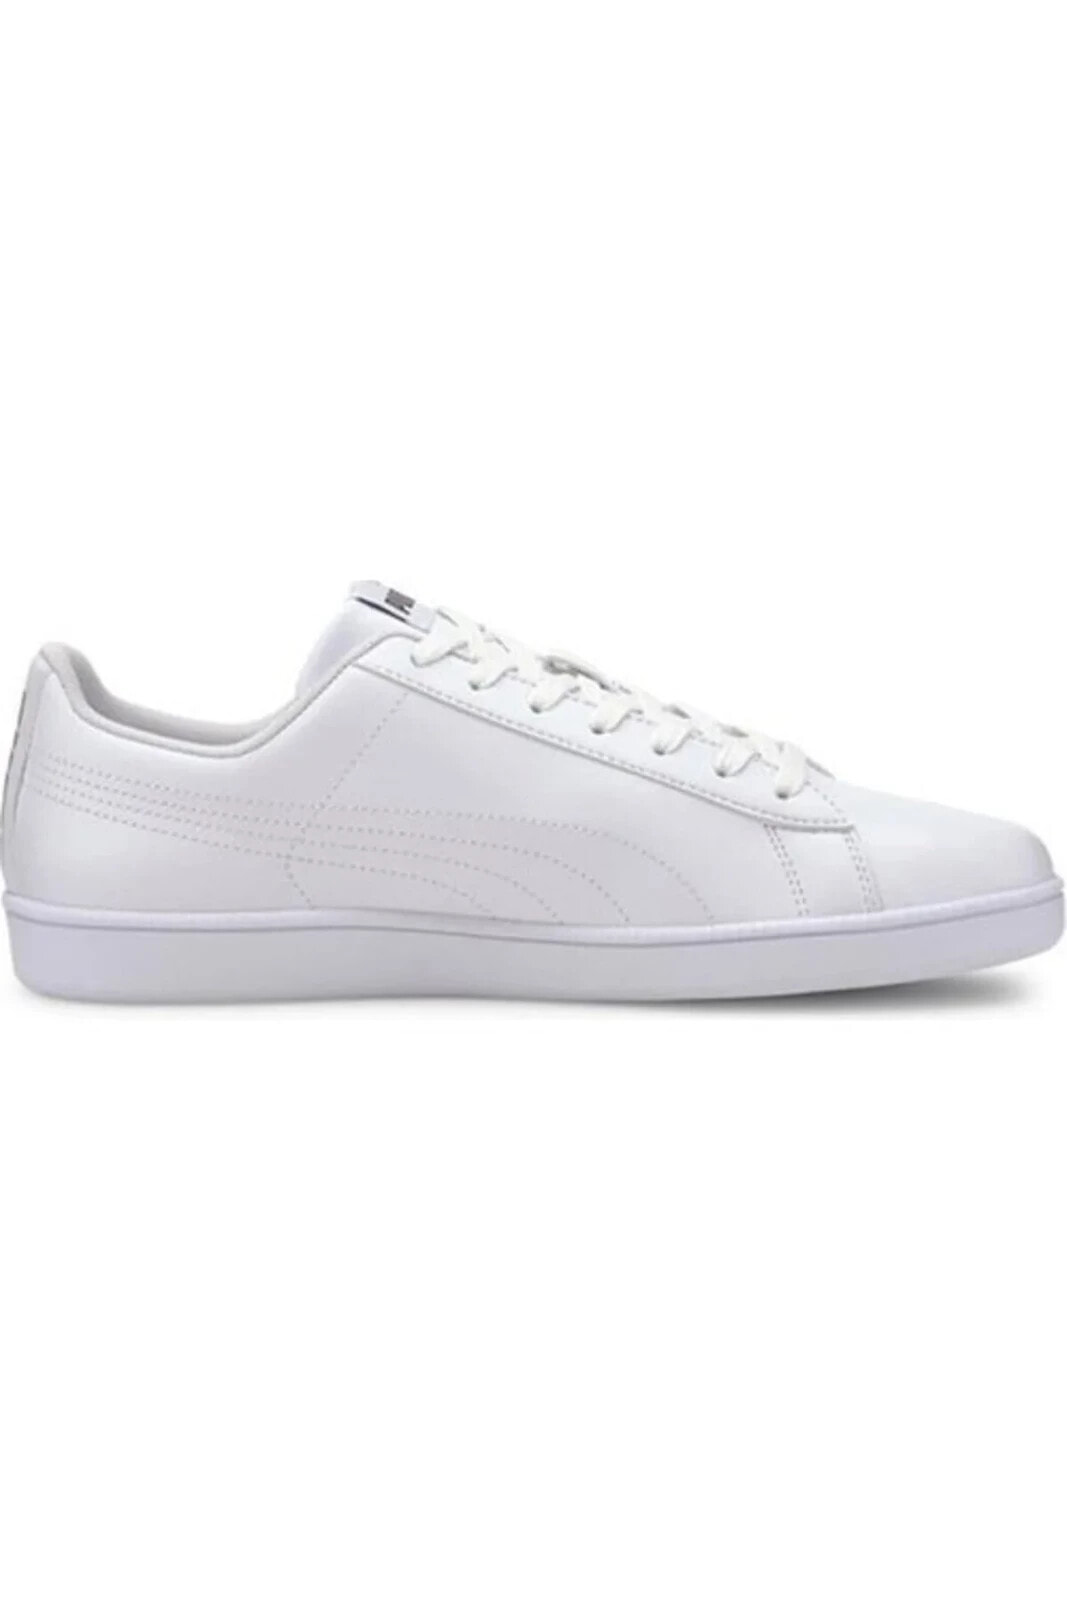 Rickie Unisex Beyaz Günlük Yürüyüş Koşu Sneaker Spor Ayakkabı 38760701